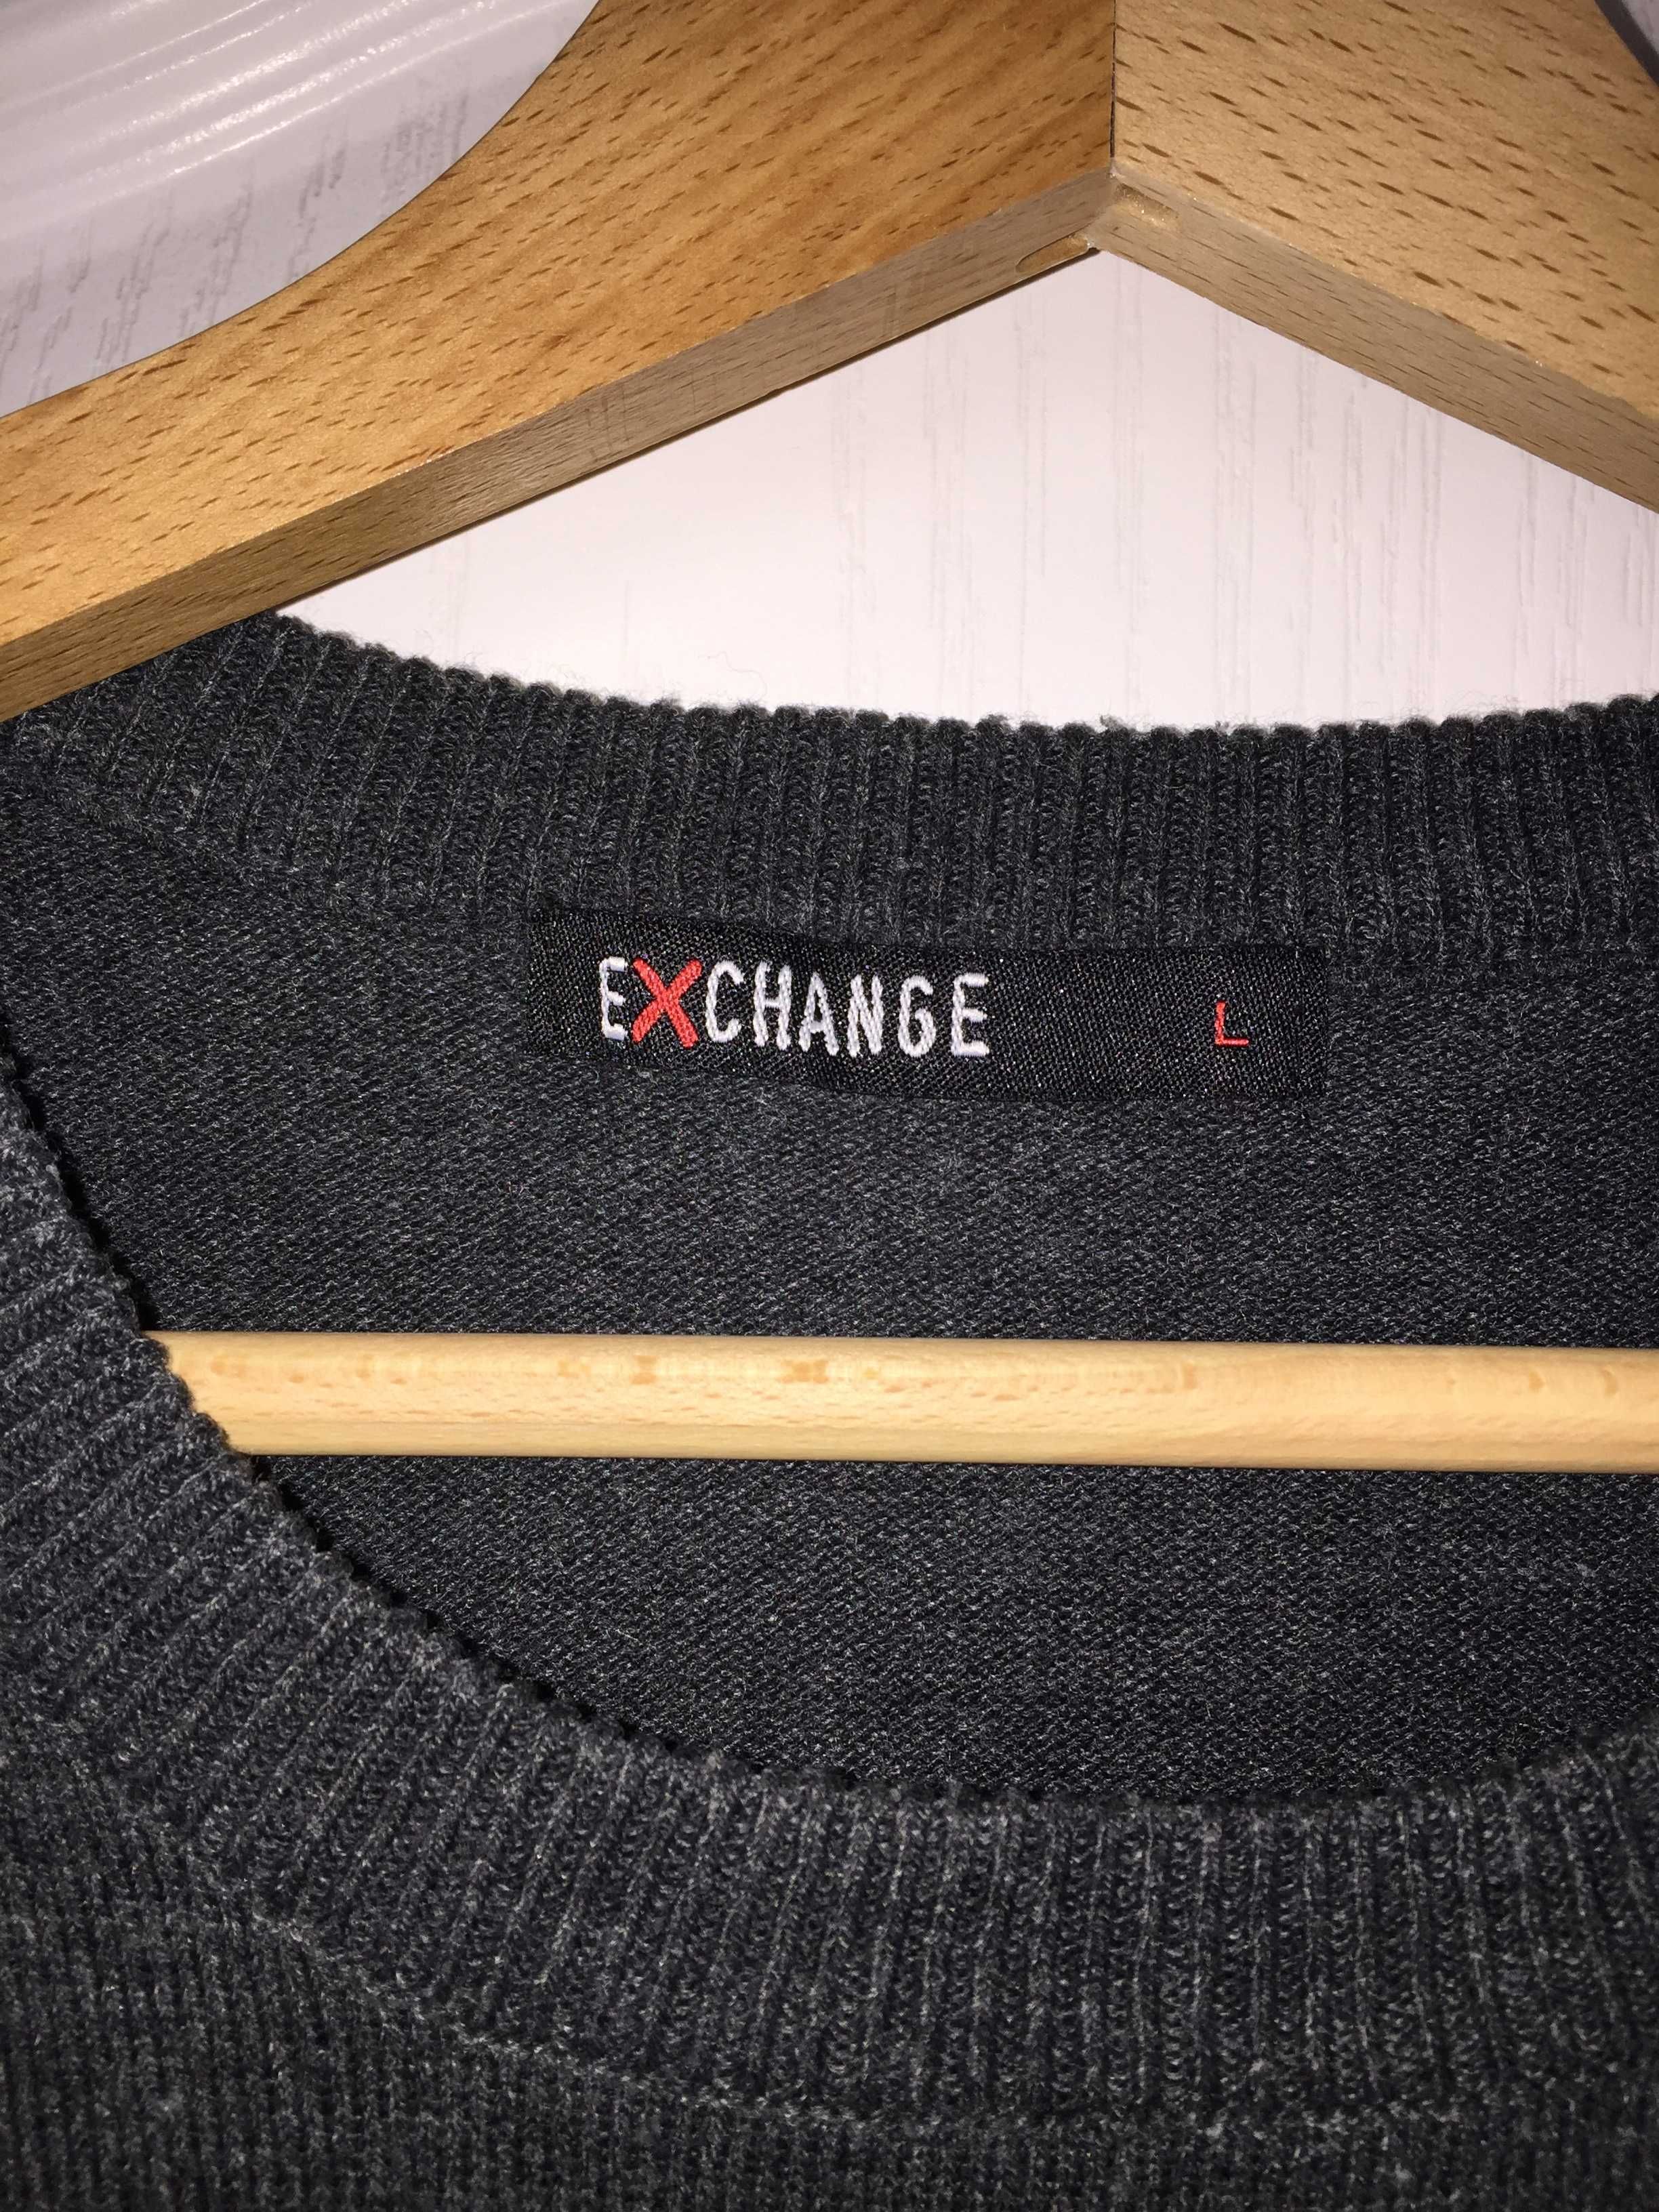 Lekki sweter męski szary w paski typu round-neck firmy exchange roz. L